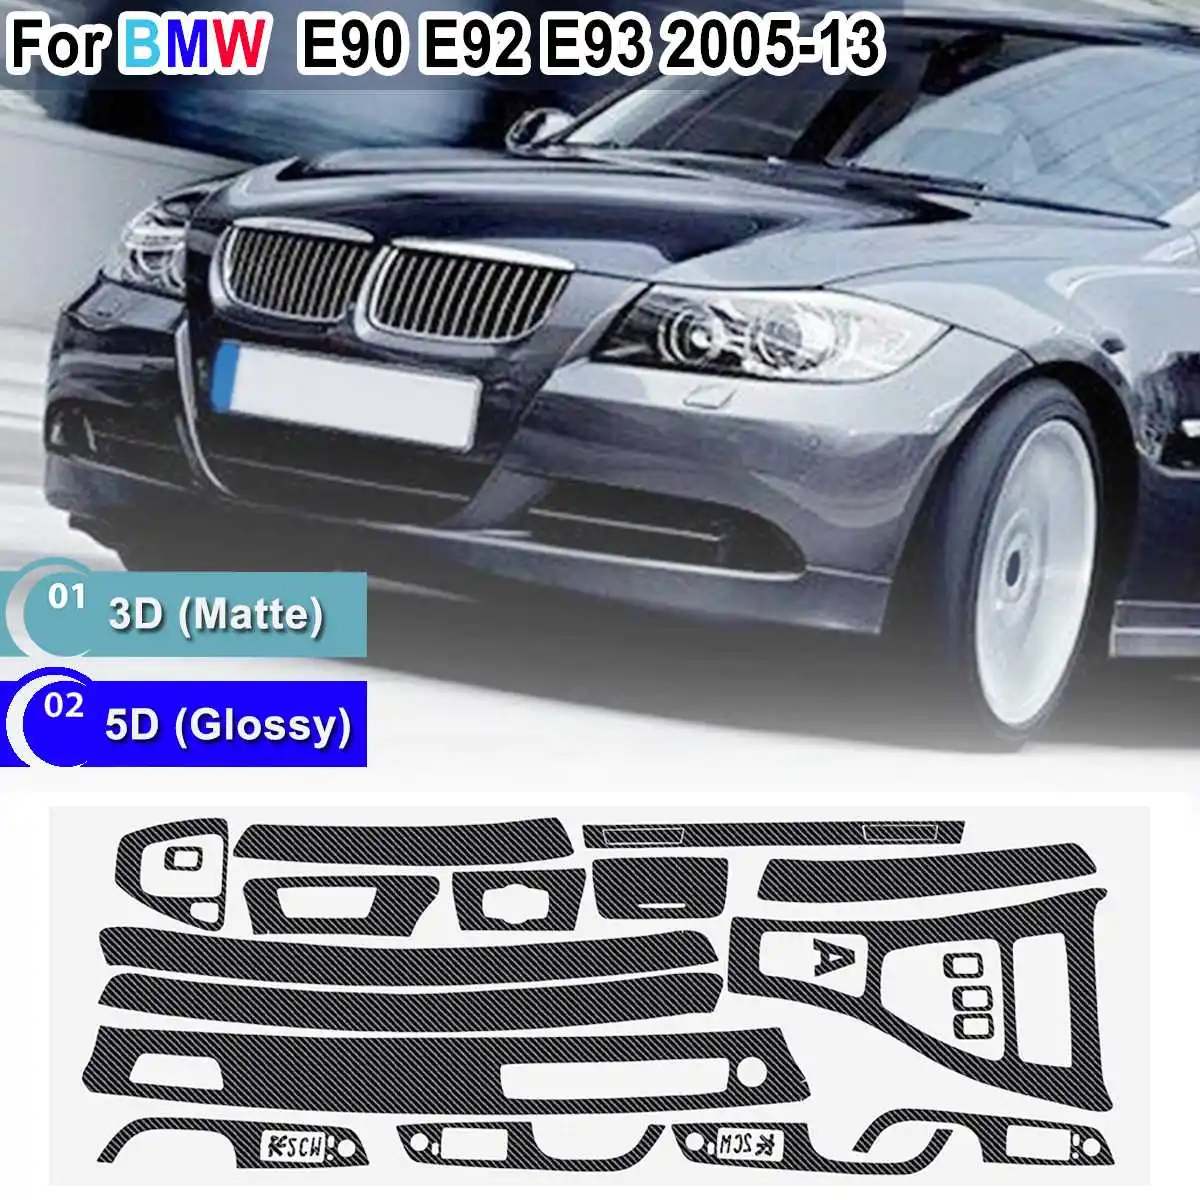 15 шт. только RHD 5D Глянцевая/3D матовая наклейка из углеродного волокна виниловая наклейка Накладка для BMW E90 E92 E93 2005-2013